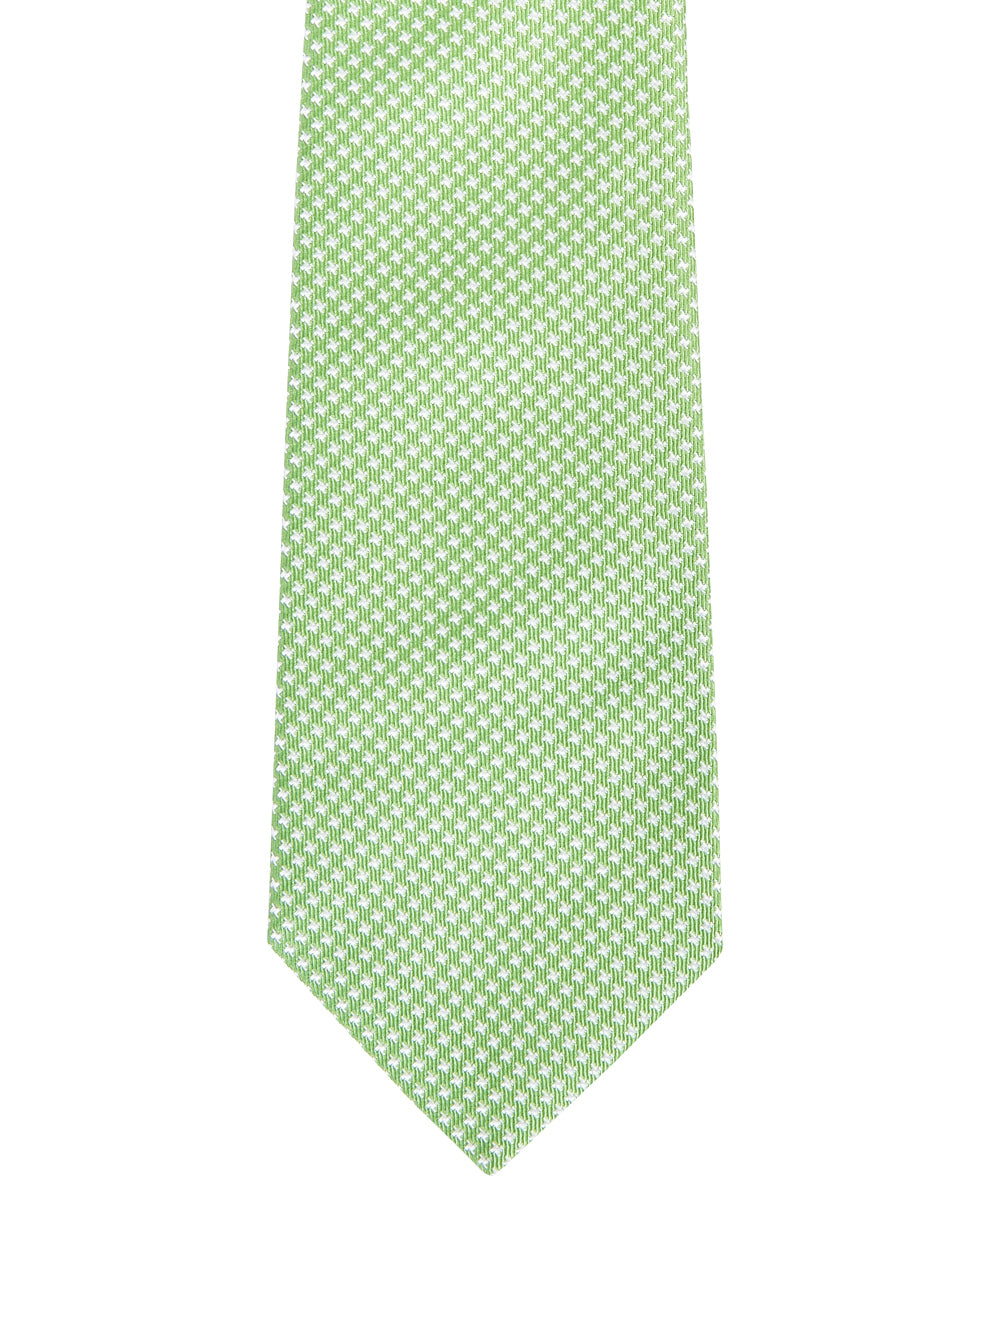 Cravatta PETRONIUS Microricamo
Verde